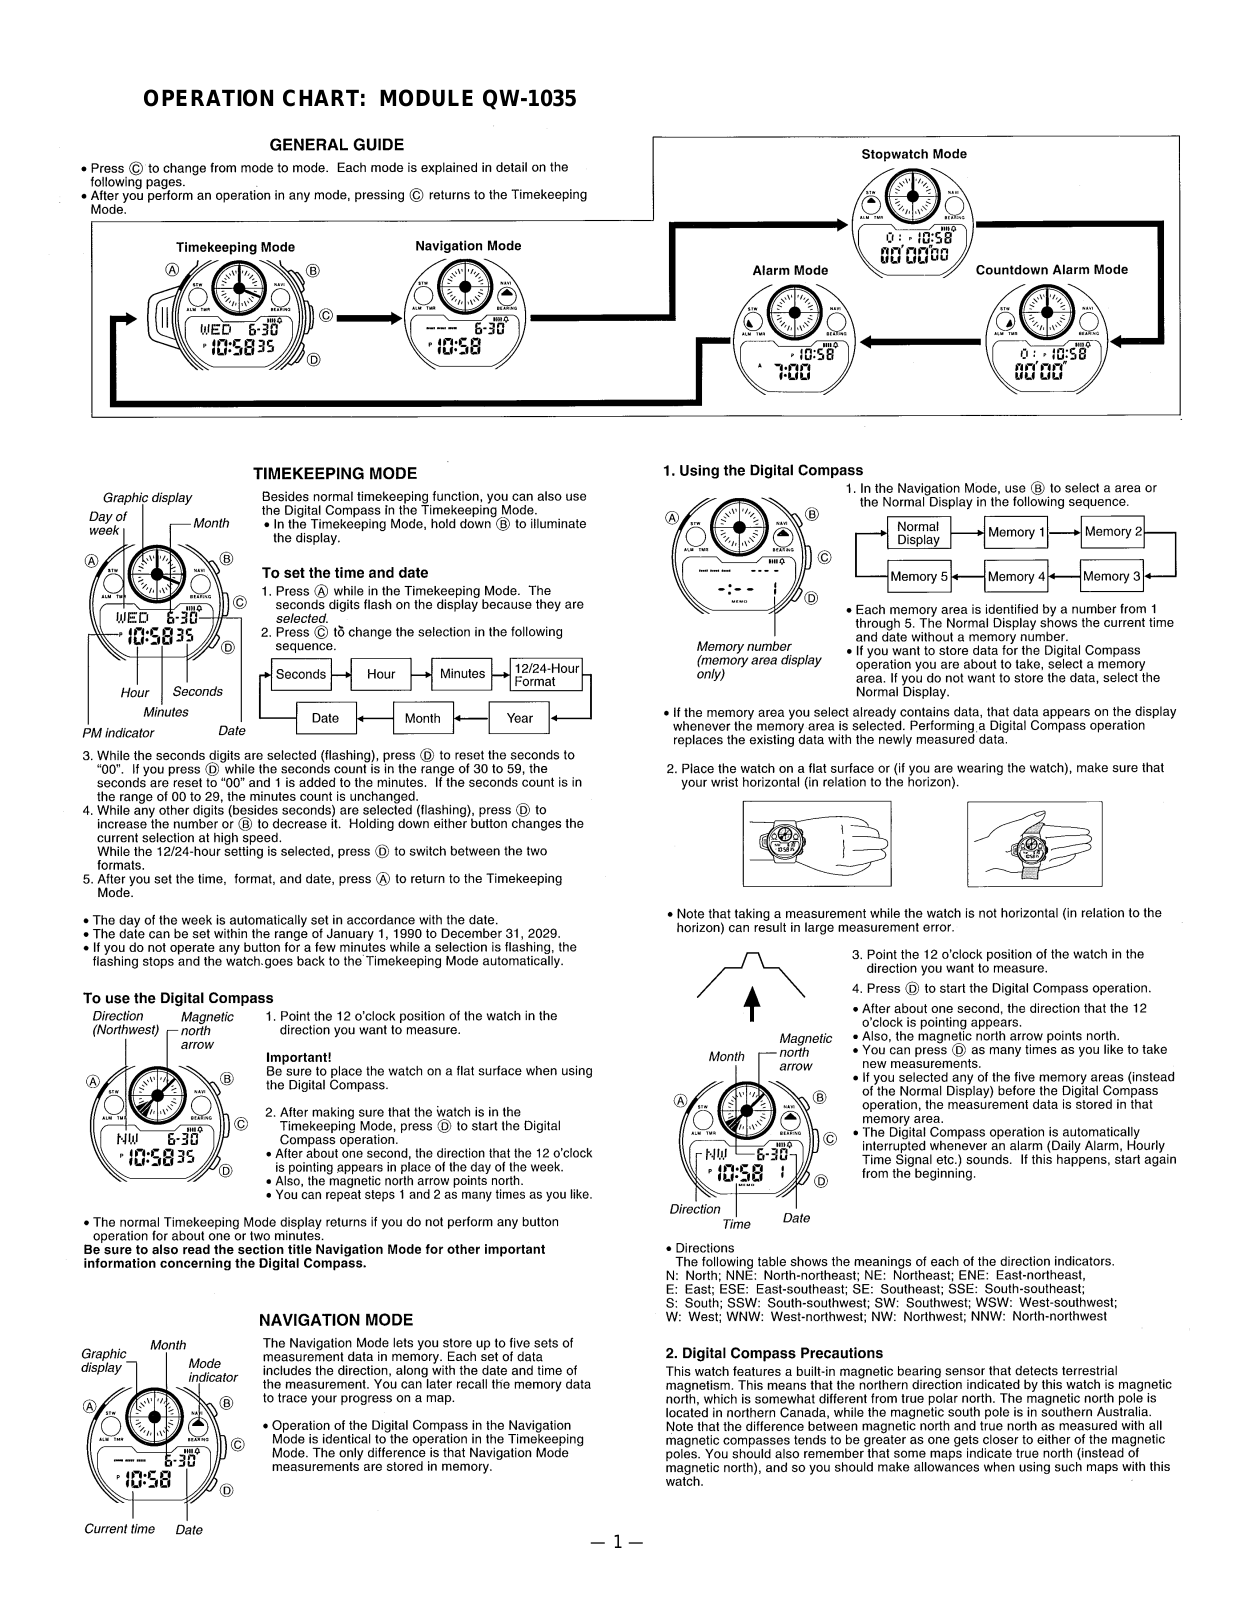 Casio 1035 Owner's Manual